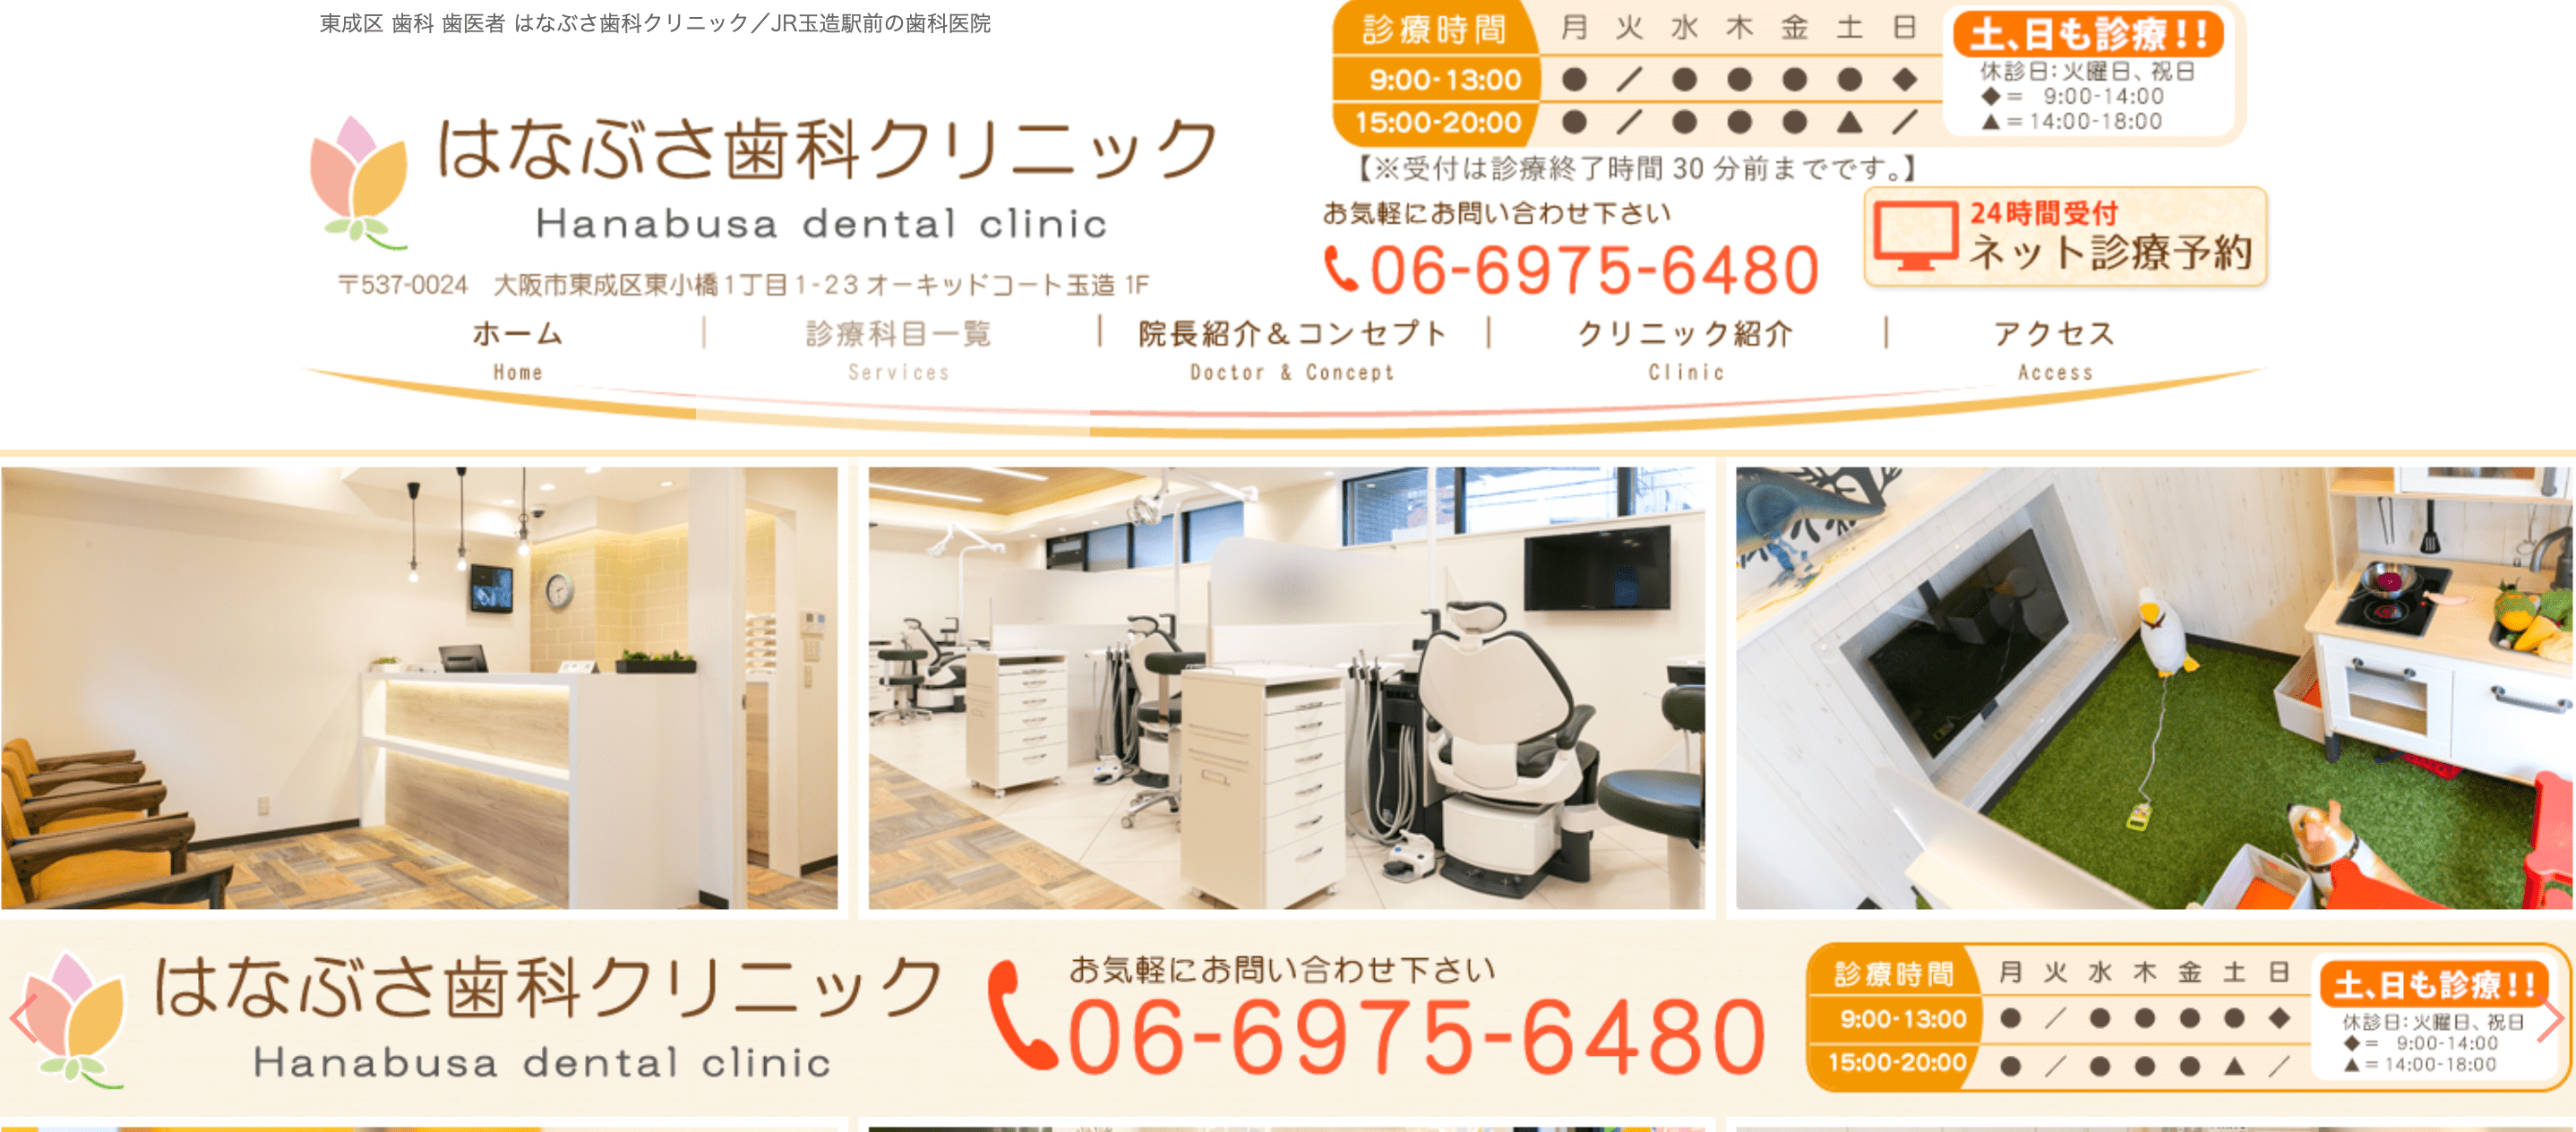 大阪市で評判のホワイトニングにおすすめの歯科クリニック10選 はなぶさ歯科クリニック